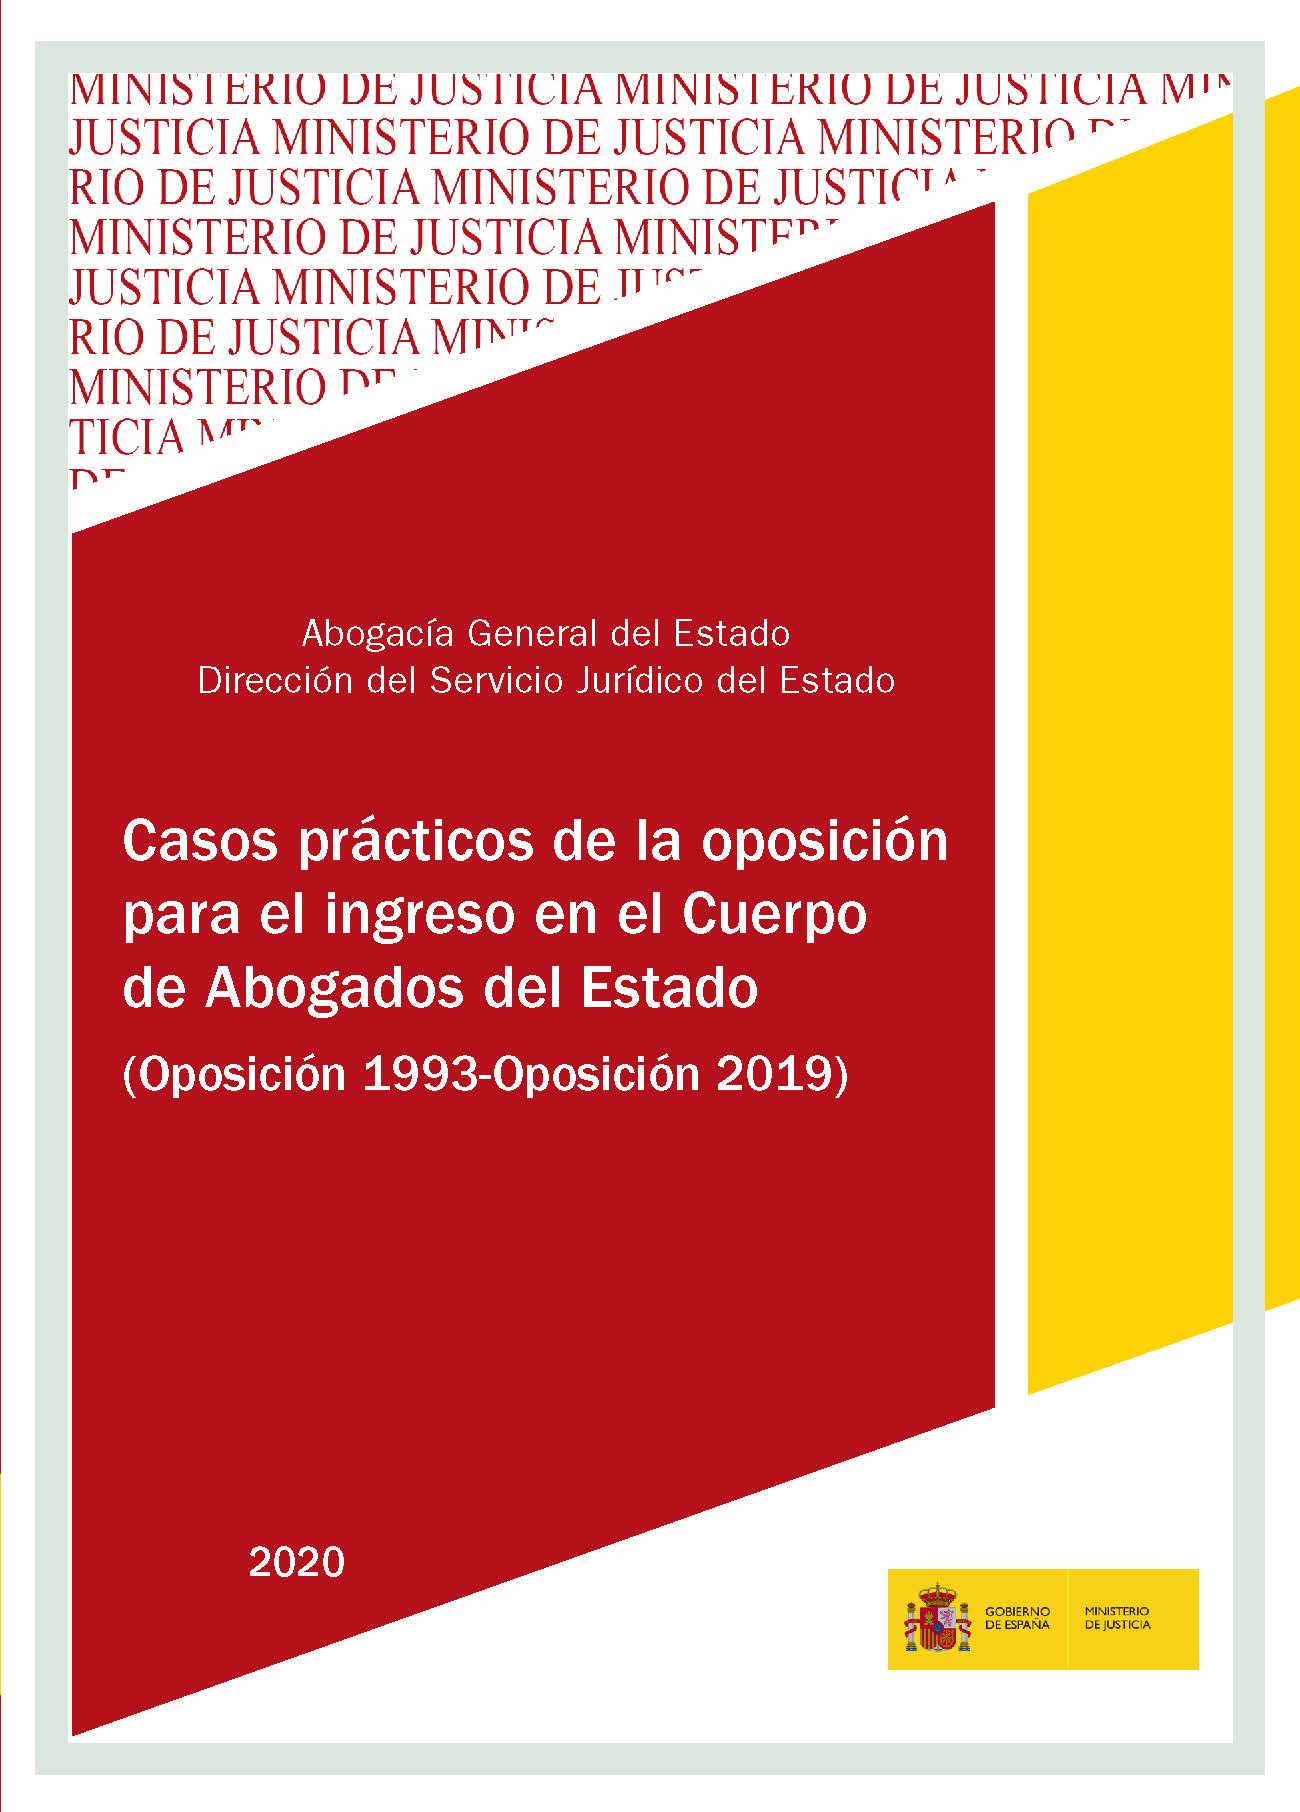 View details of CASOS PRÁCTICOS DE LA OPOSICIÓN PARA EL INGRESO EN EL CUERPO DE ABOGADOS DEL ESTADO 2020,PDF